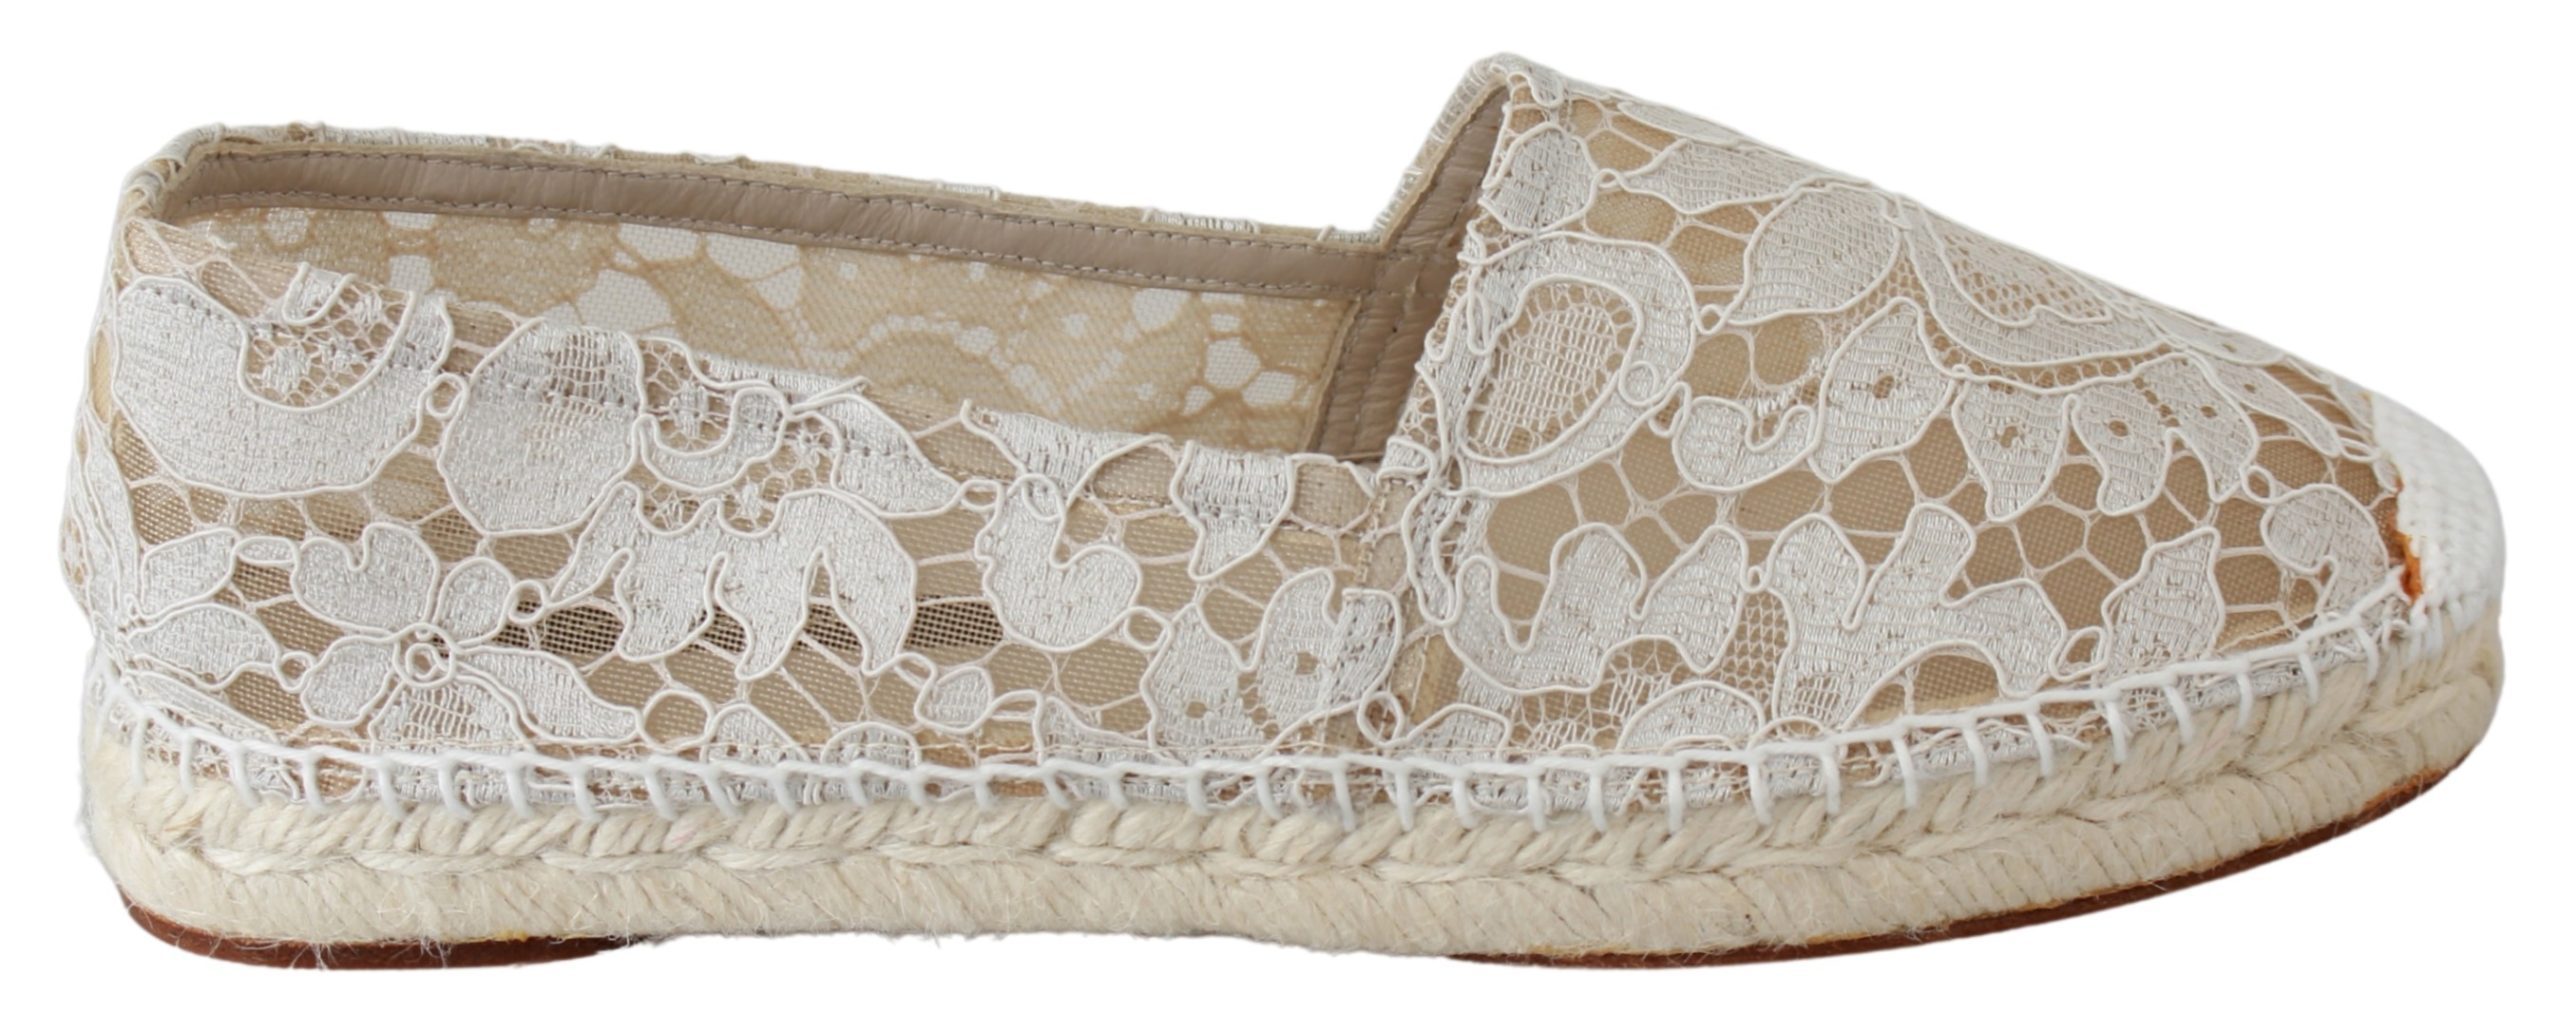 Dolce & Gabbana Women's Lace Cotton Shoes Beige LA6527-35 - EU35/US4.5